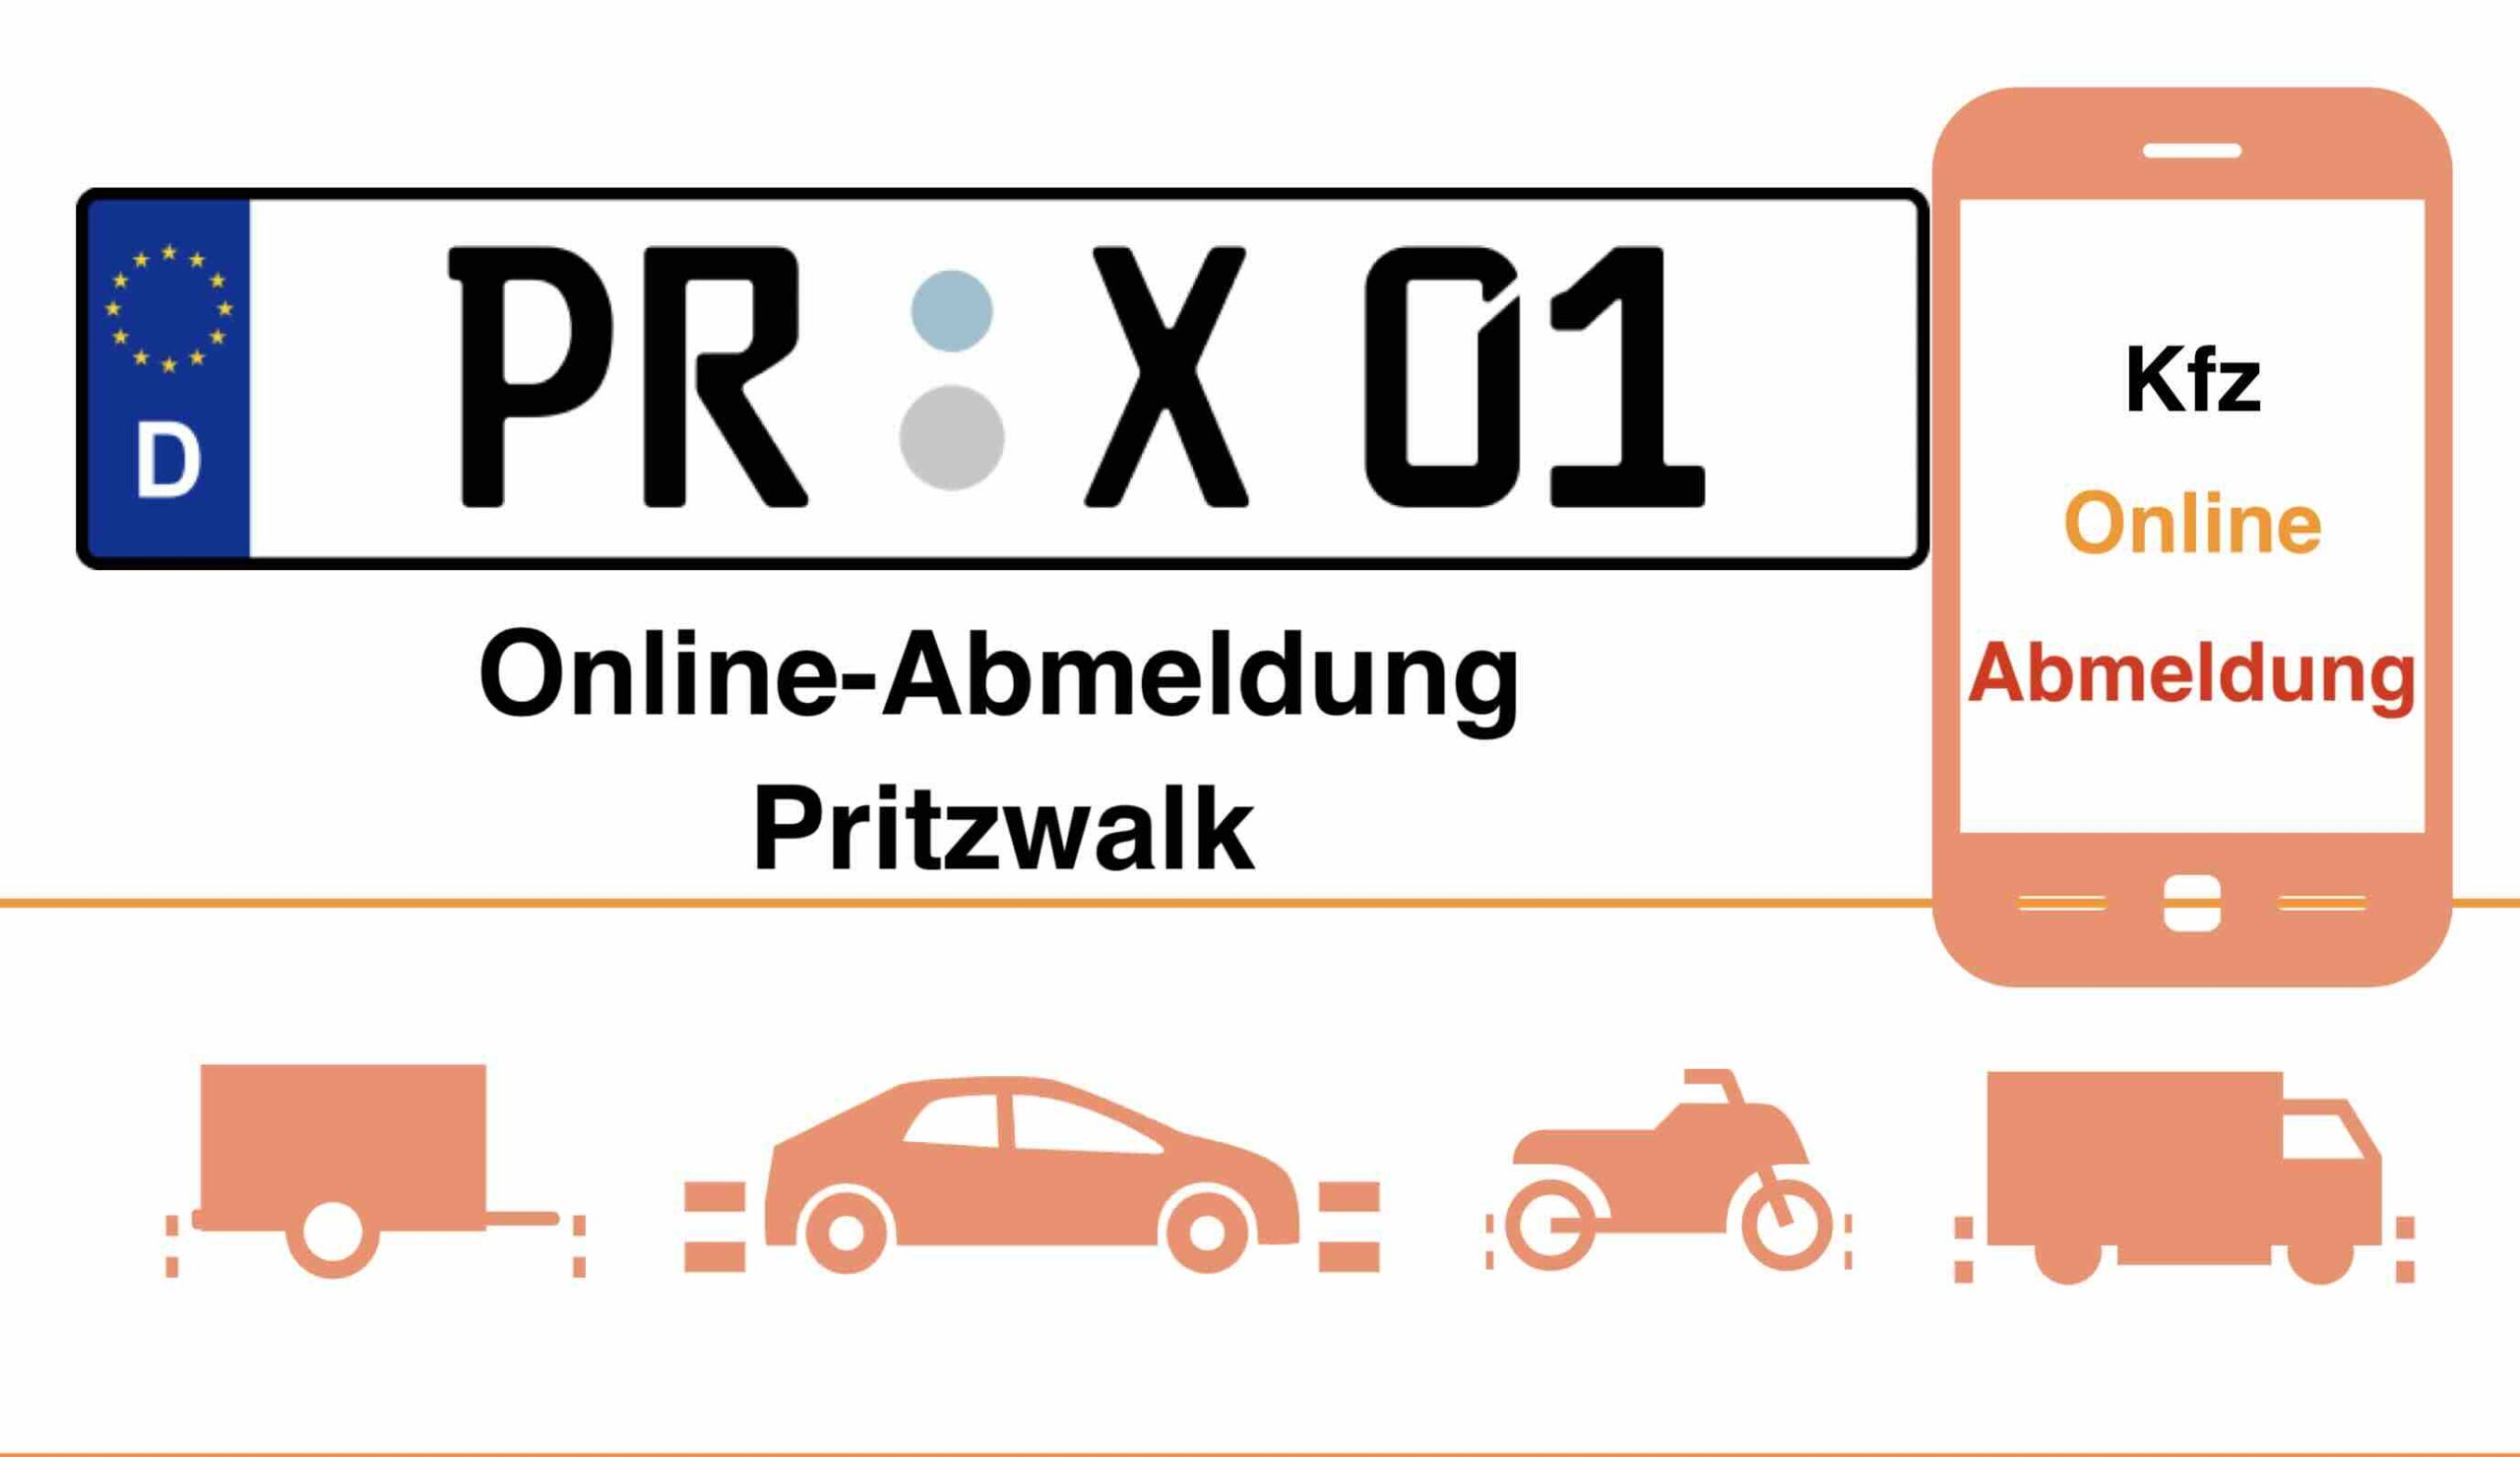 Online-Abmeldung in Pritzwalk 